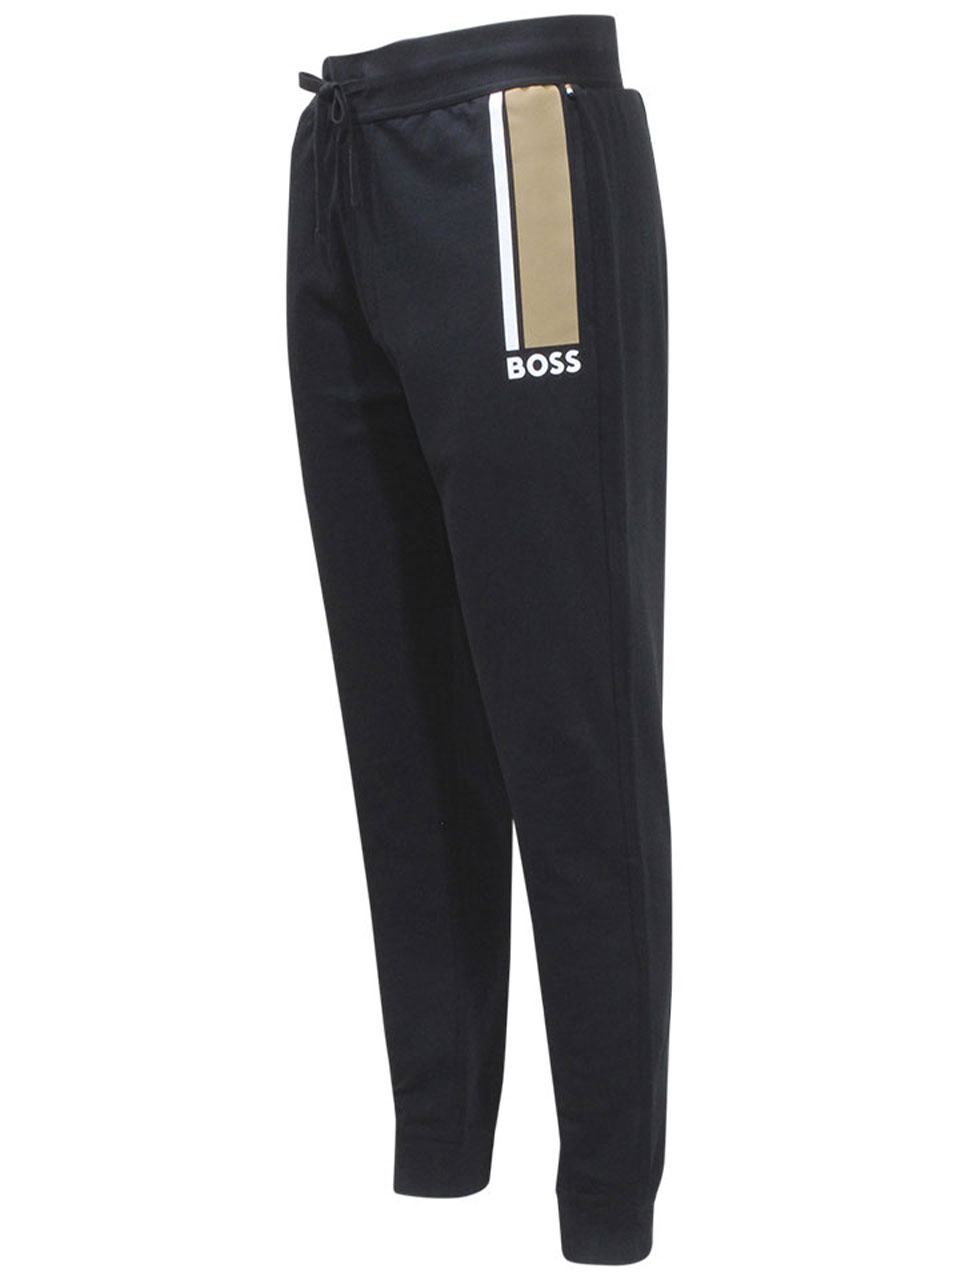 Hugo Boss Men's Authentic Pants Cotton-Terry Lounge Sweats Black Sz: XX ...